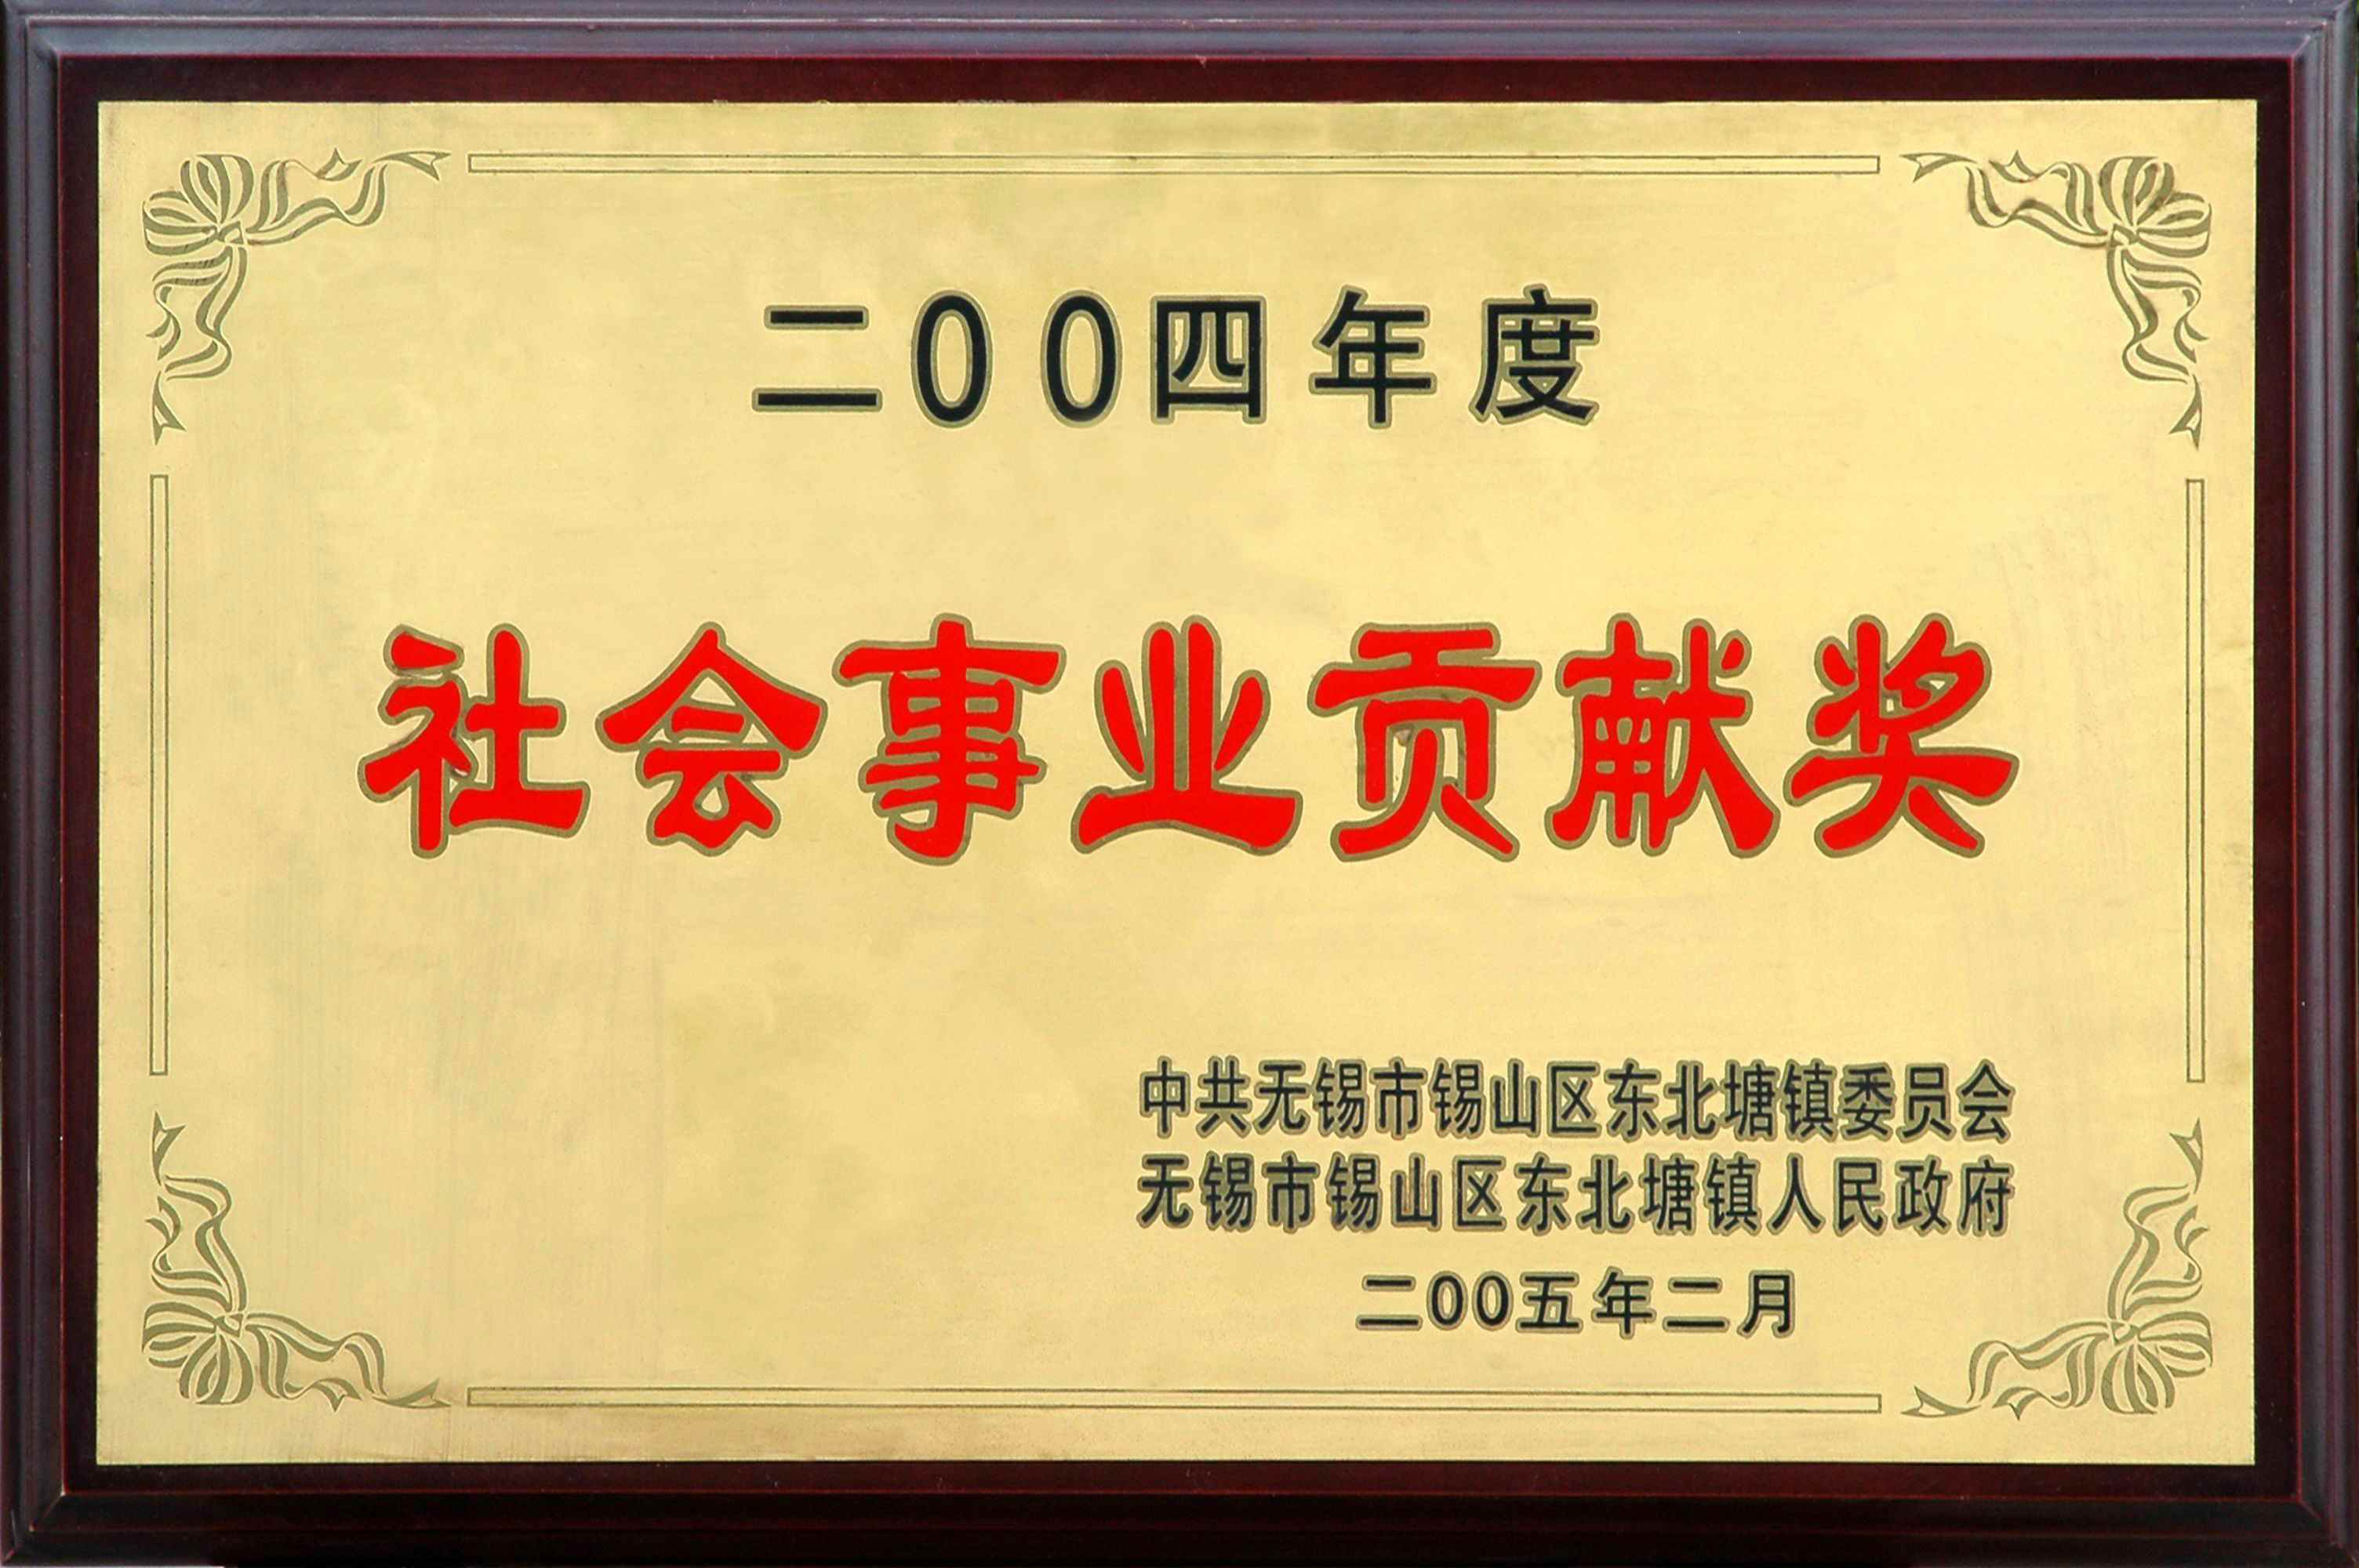 2004年东北塘镇社会事业贡献奖